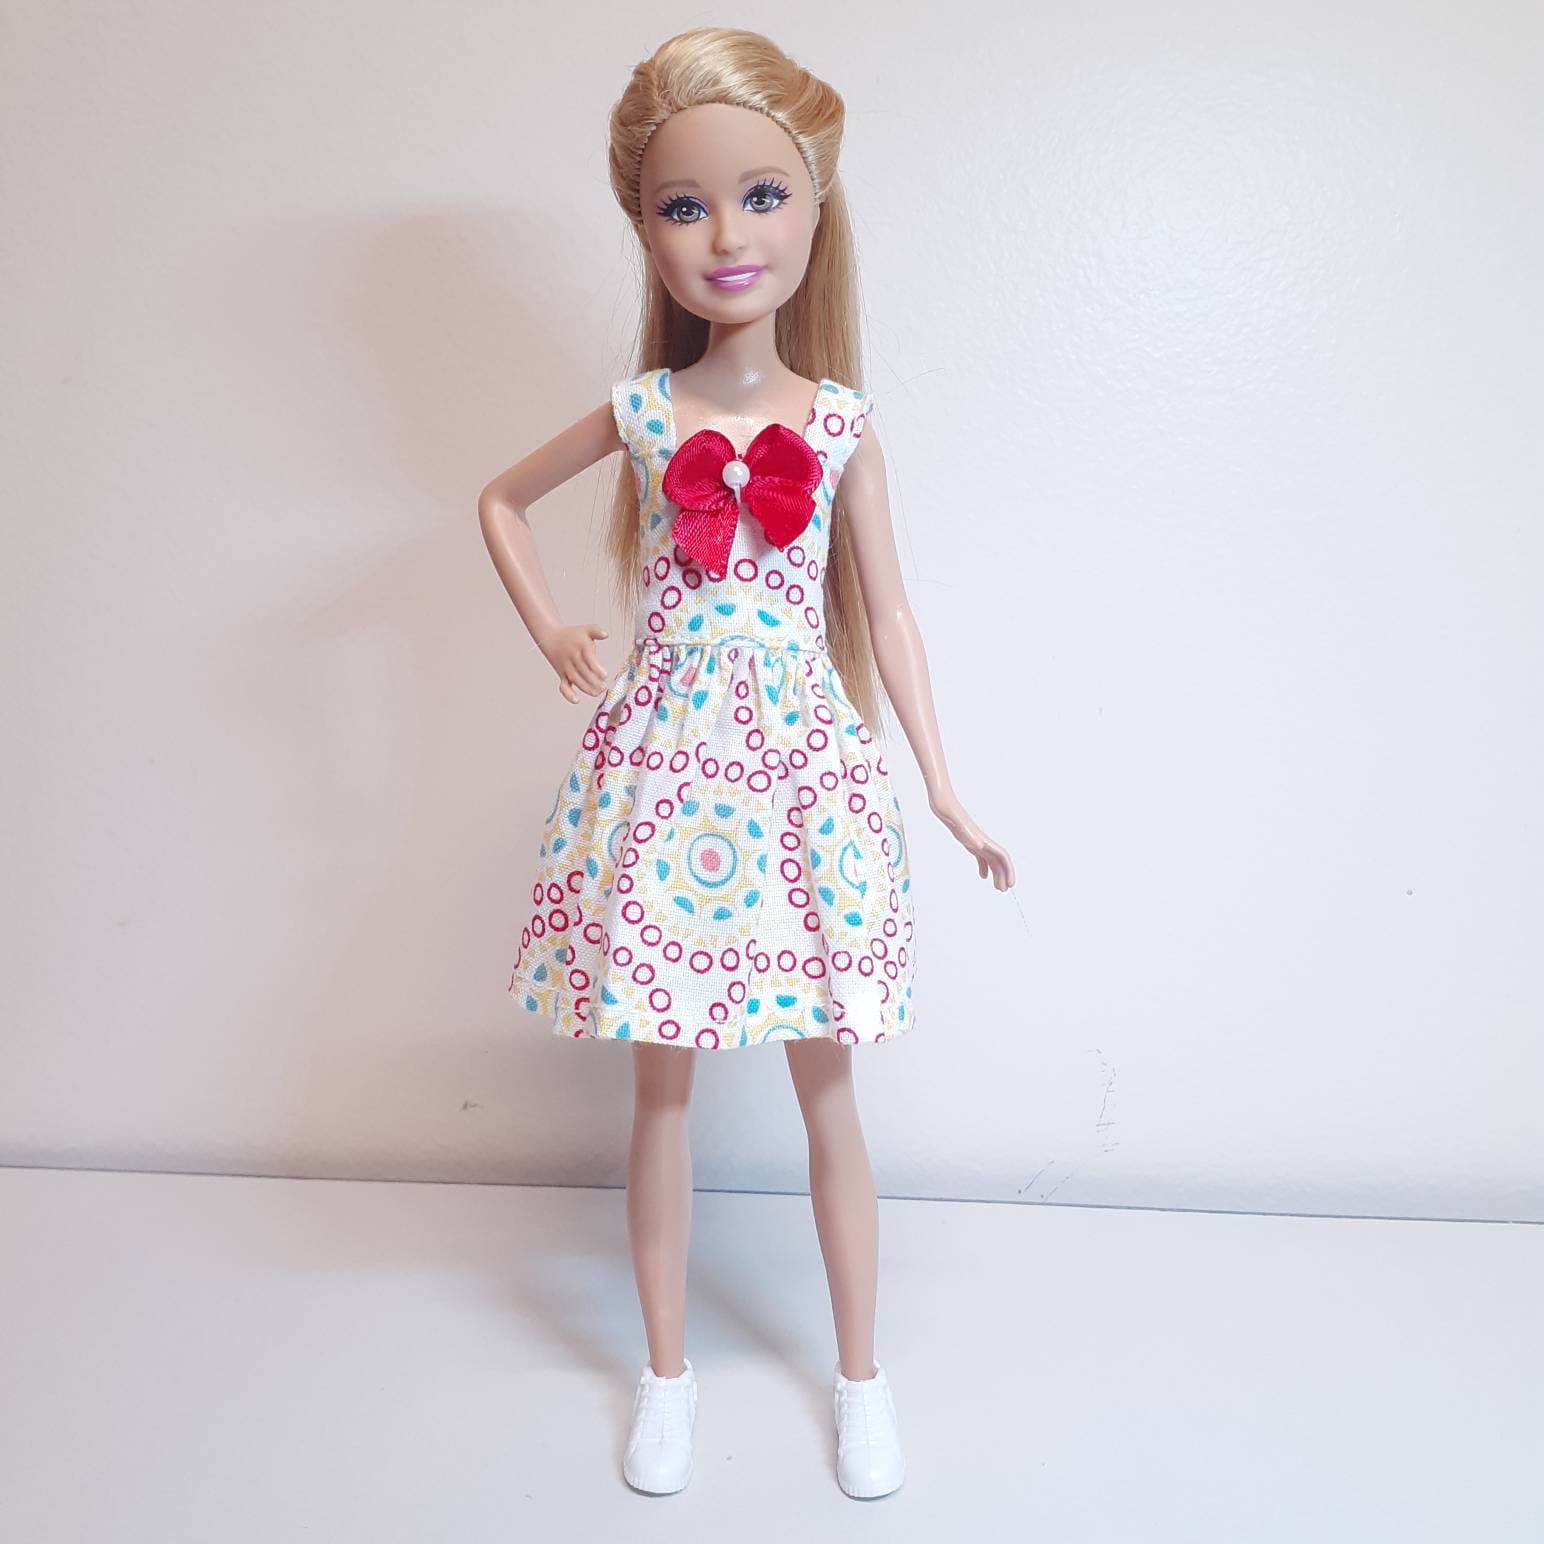 Roupa para Barbie Curvy vestido com bolsa chapéu e sapatilha